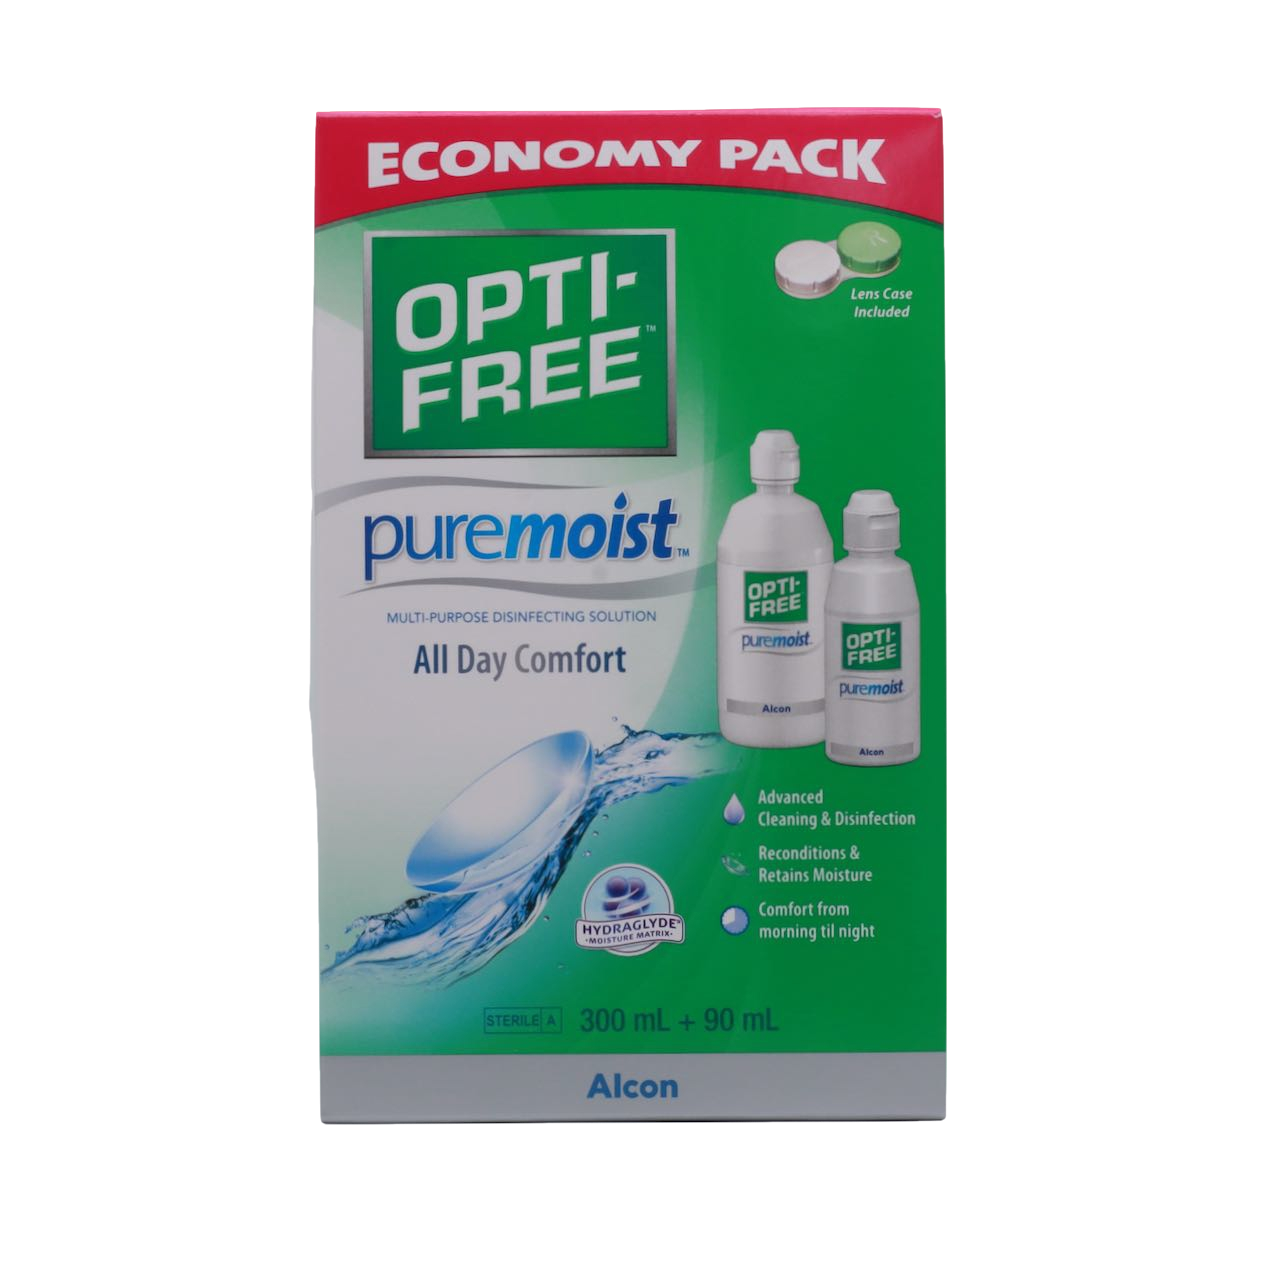 Opti-Free Puremoist Economy Pack